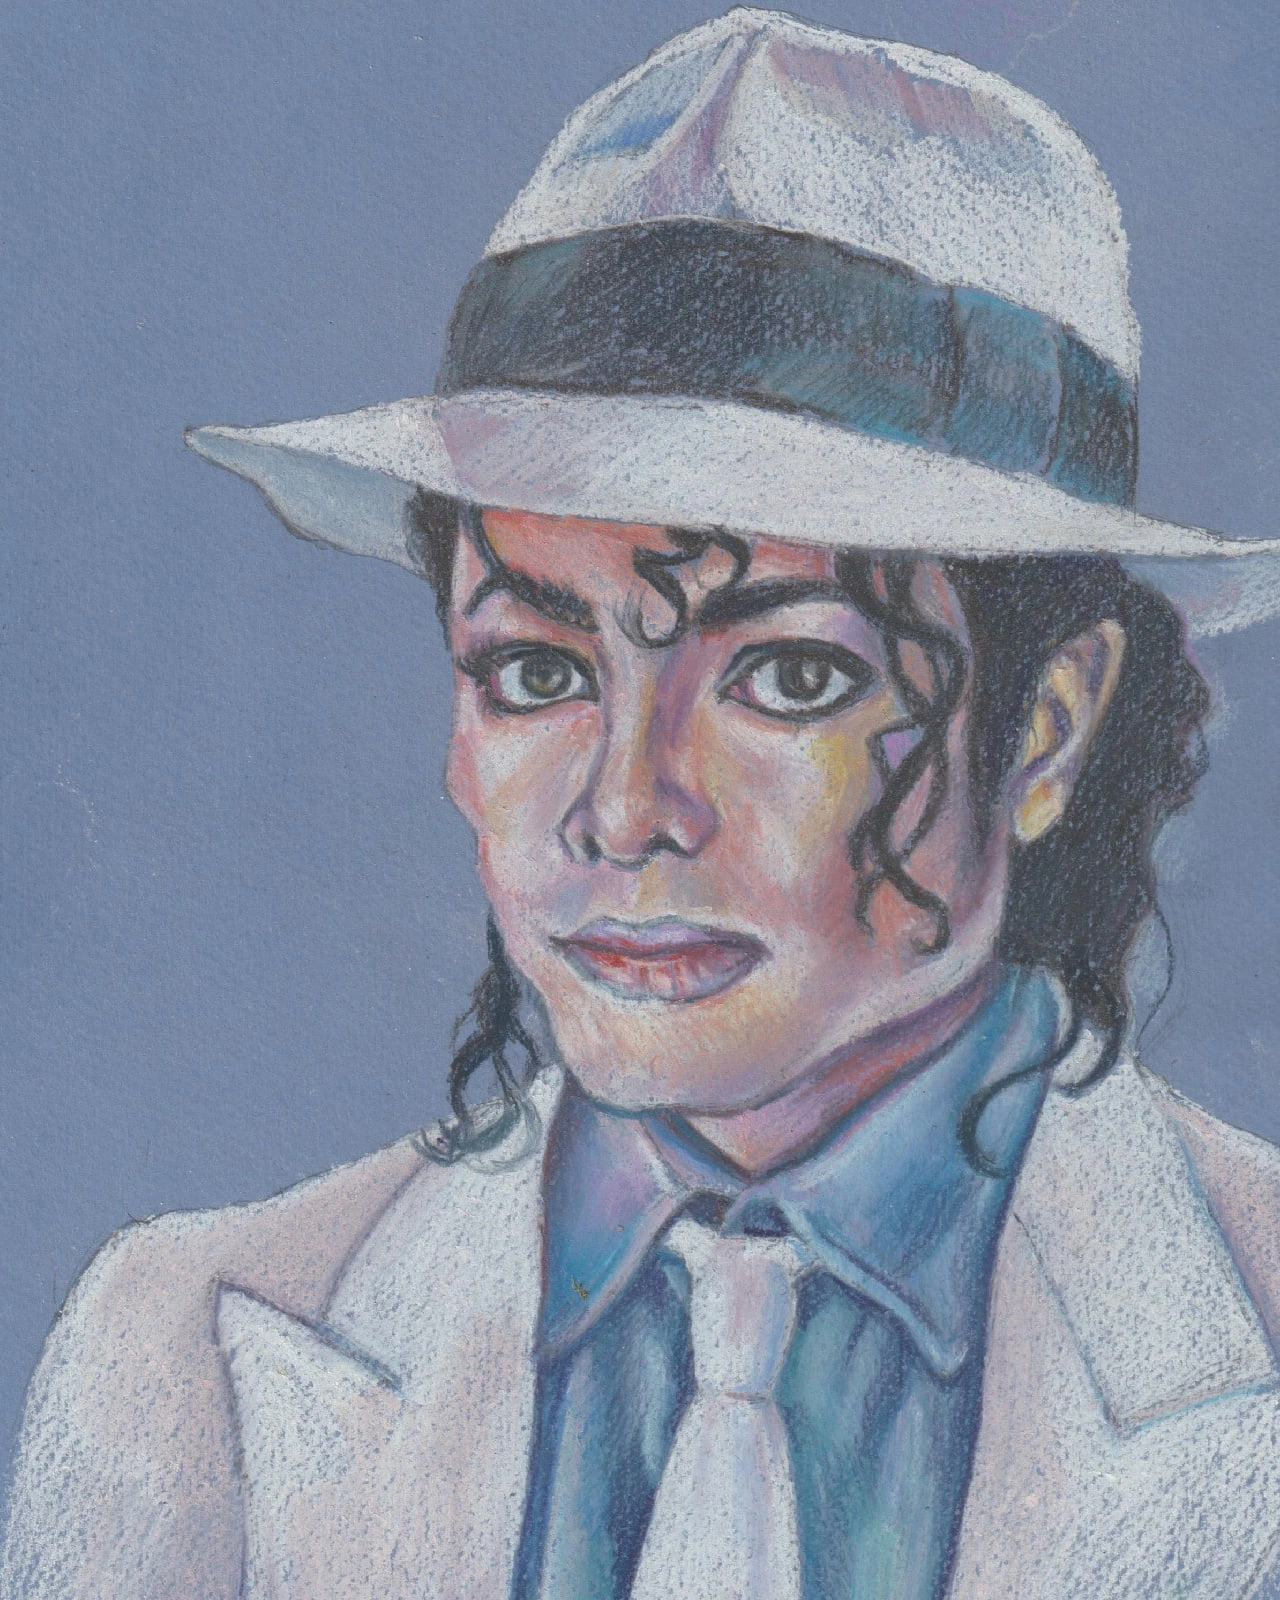 Michael Jackson, Smooth criminal